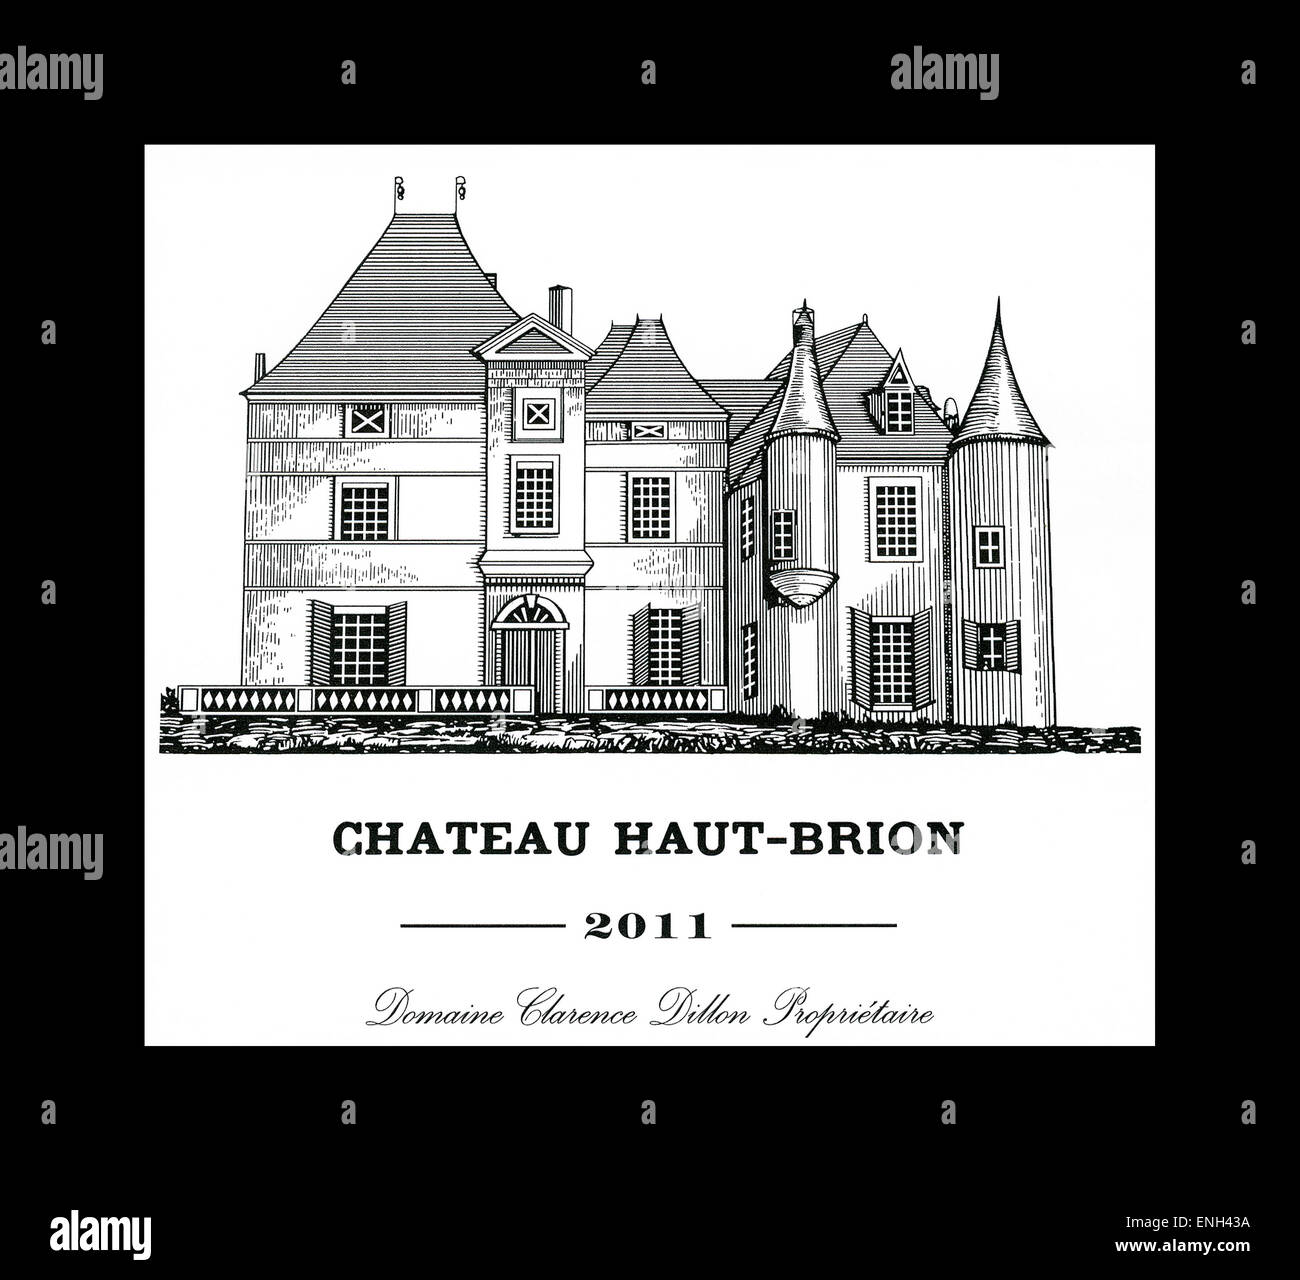 Chateau Haut Brion 2011 Weinflasche Etikett Stockfoto